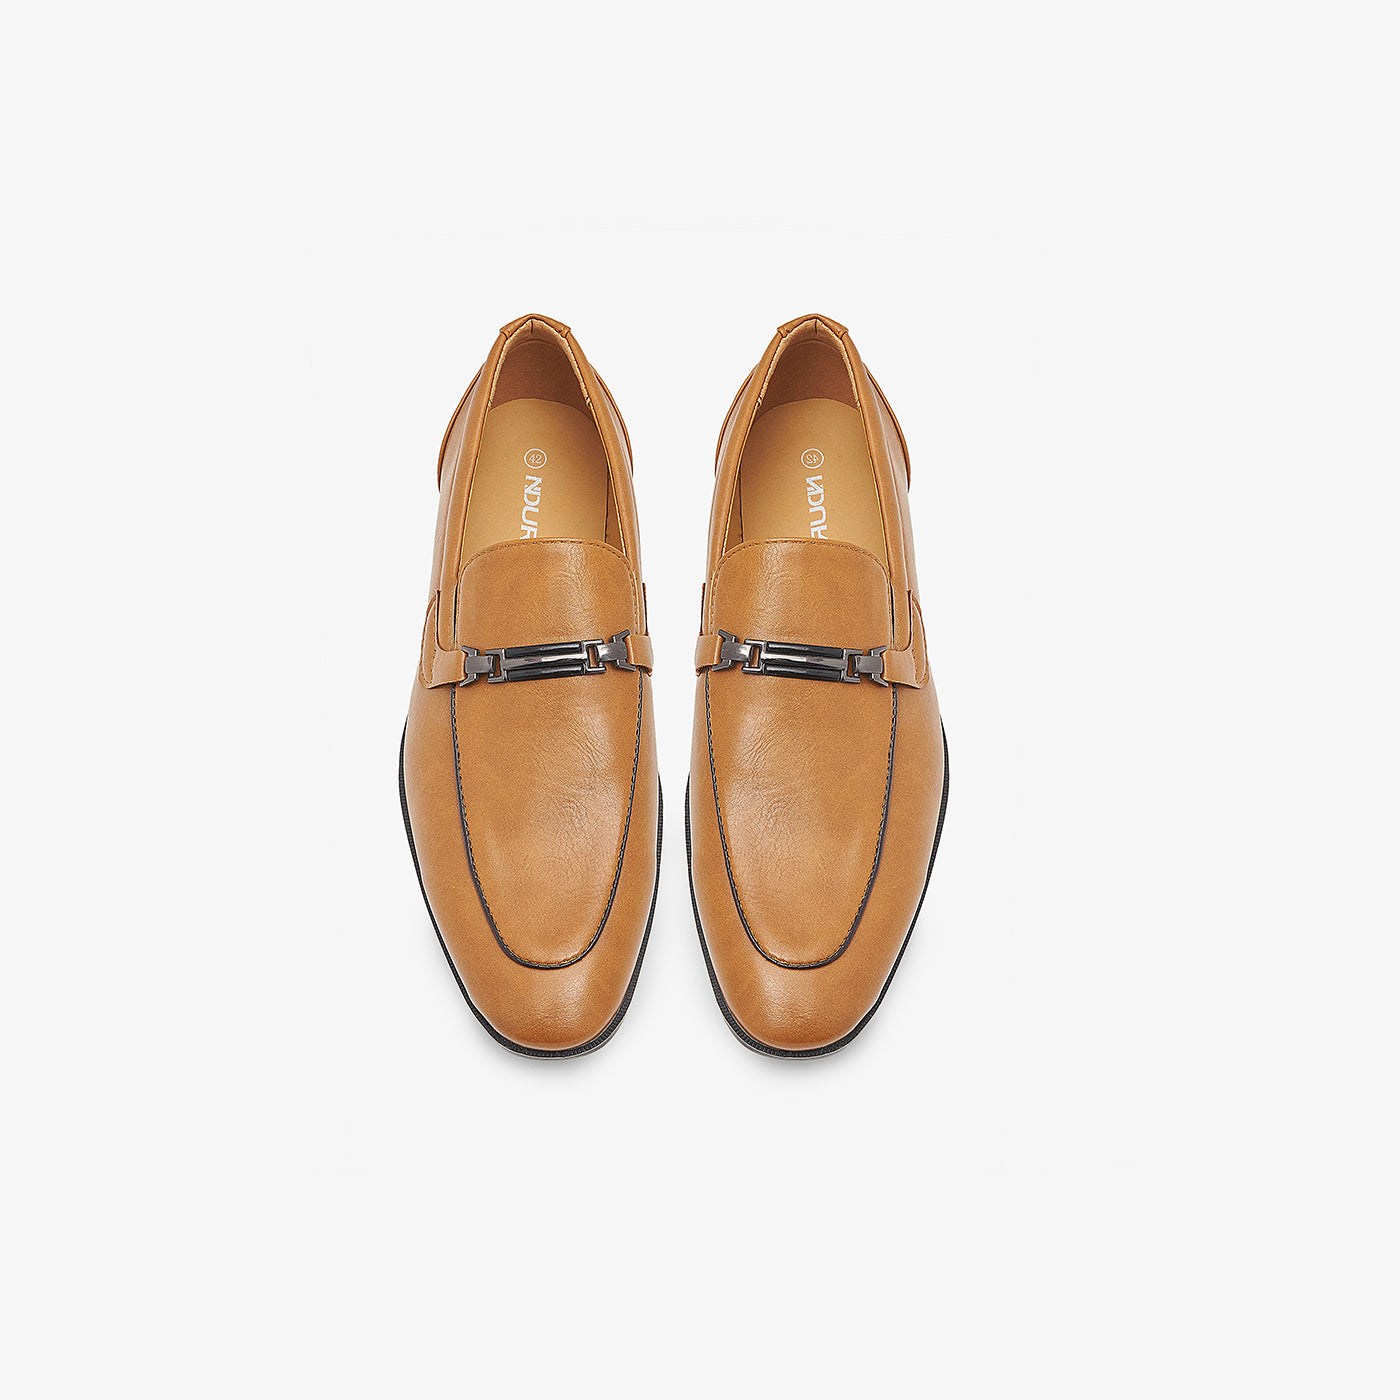 Loafer shoes for men